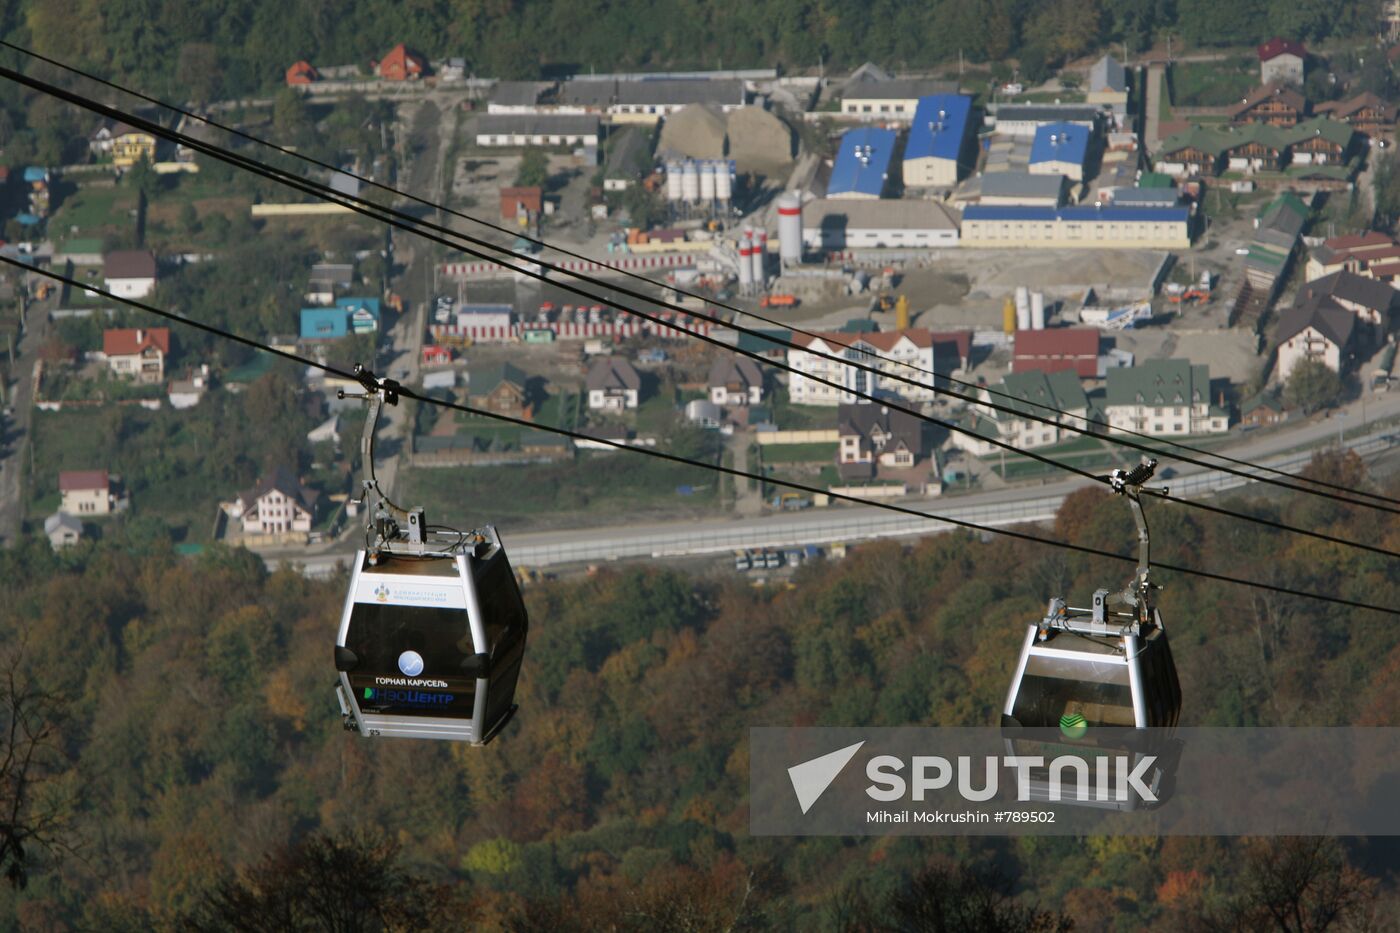 Gornaya Karusel aerial cableway